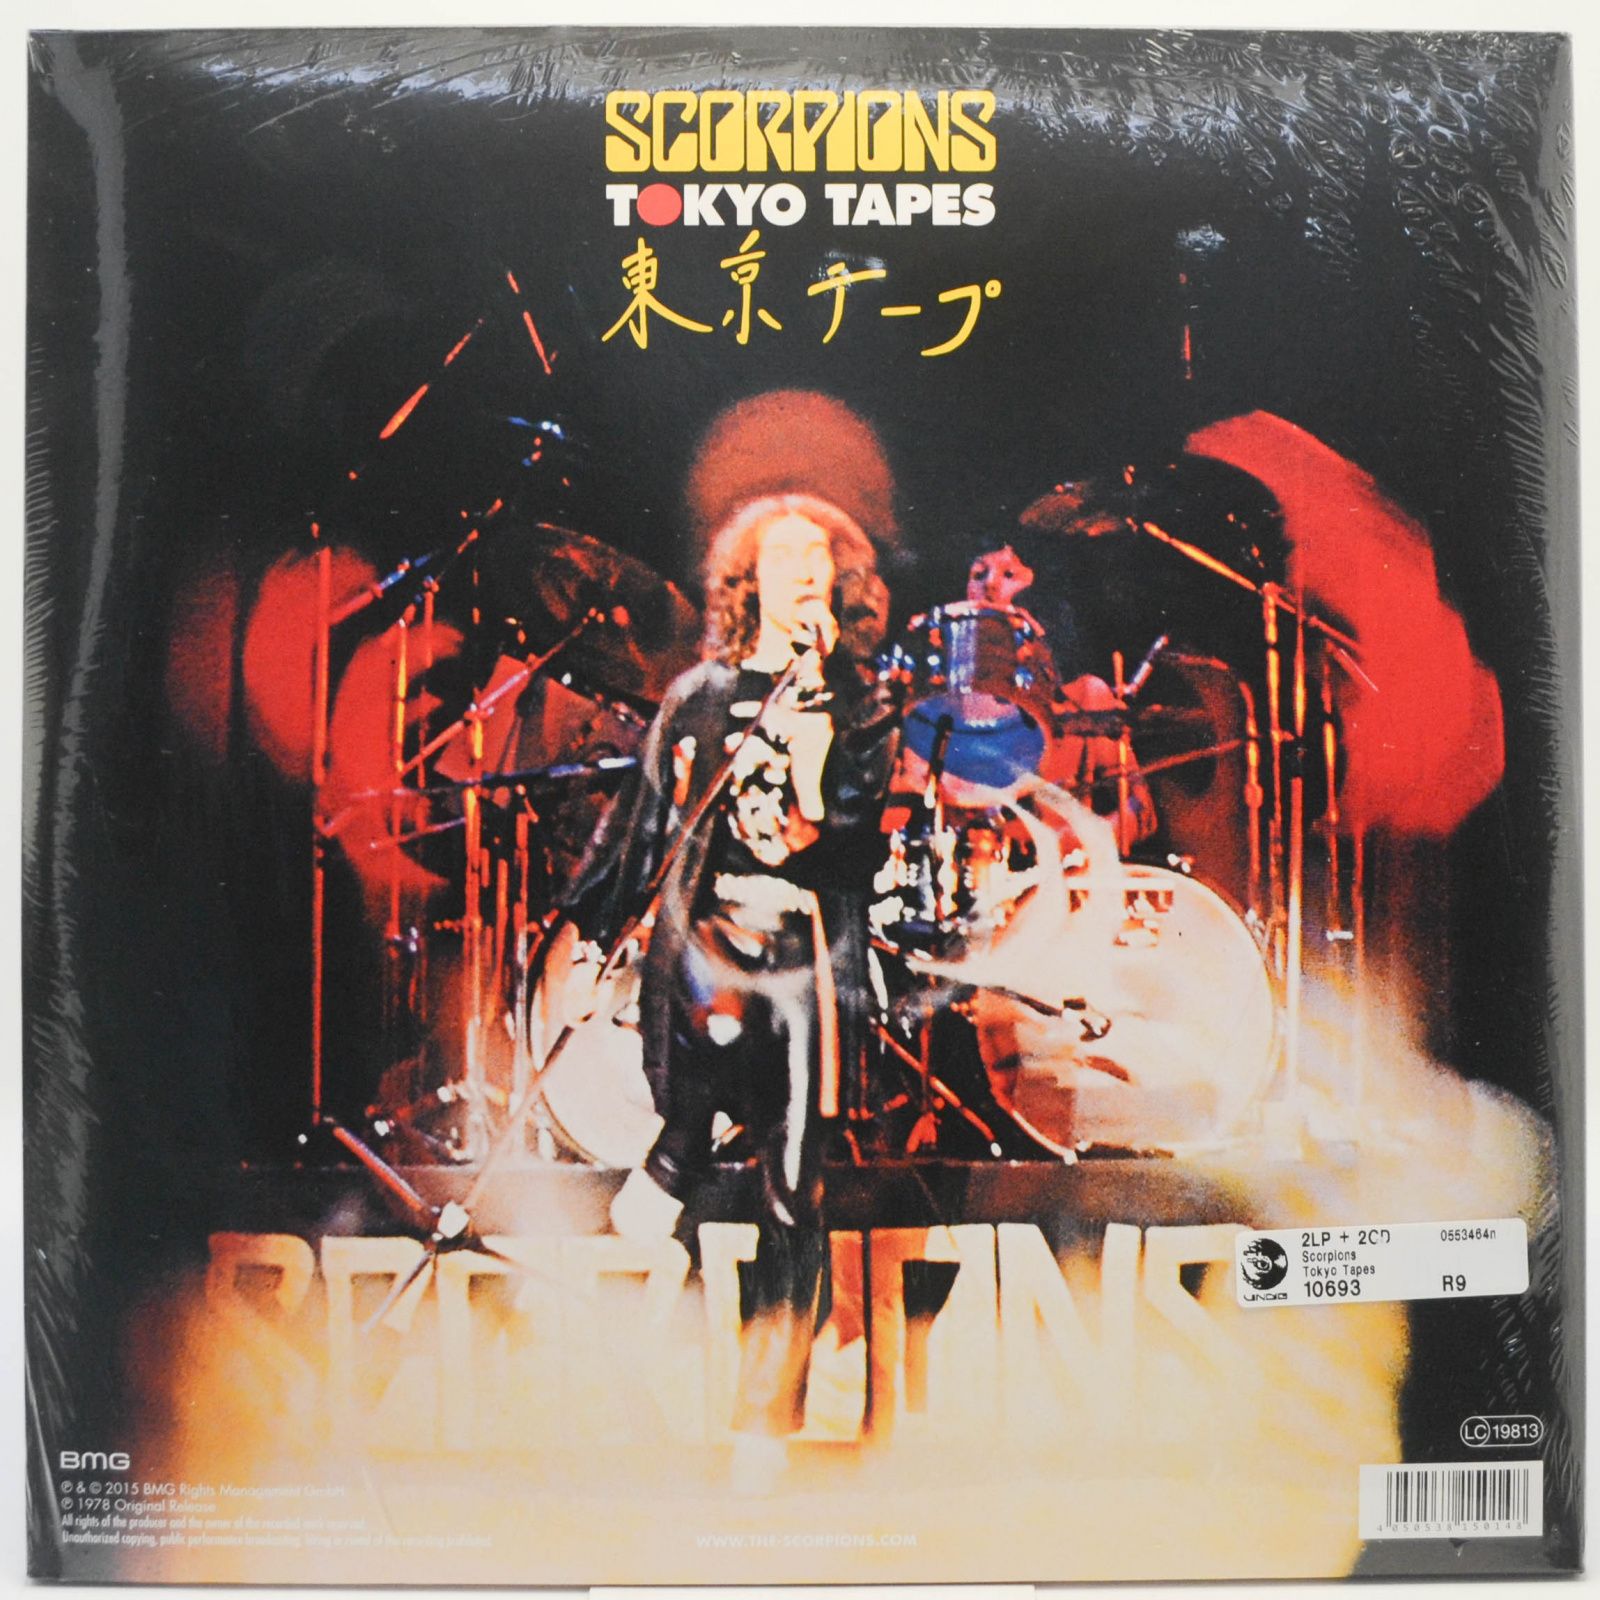 Scorpions — Tokyo Tapes (2LP+2CD), 1978